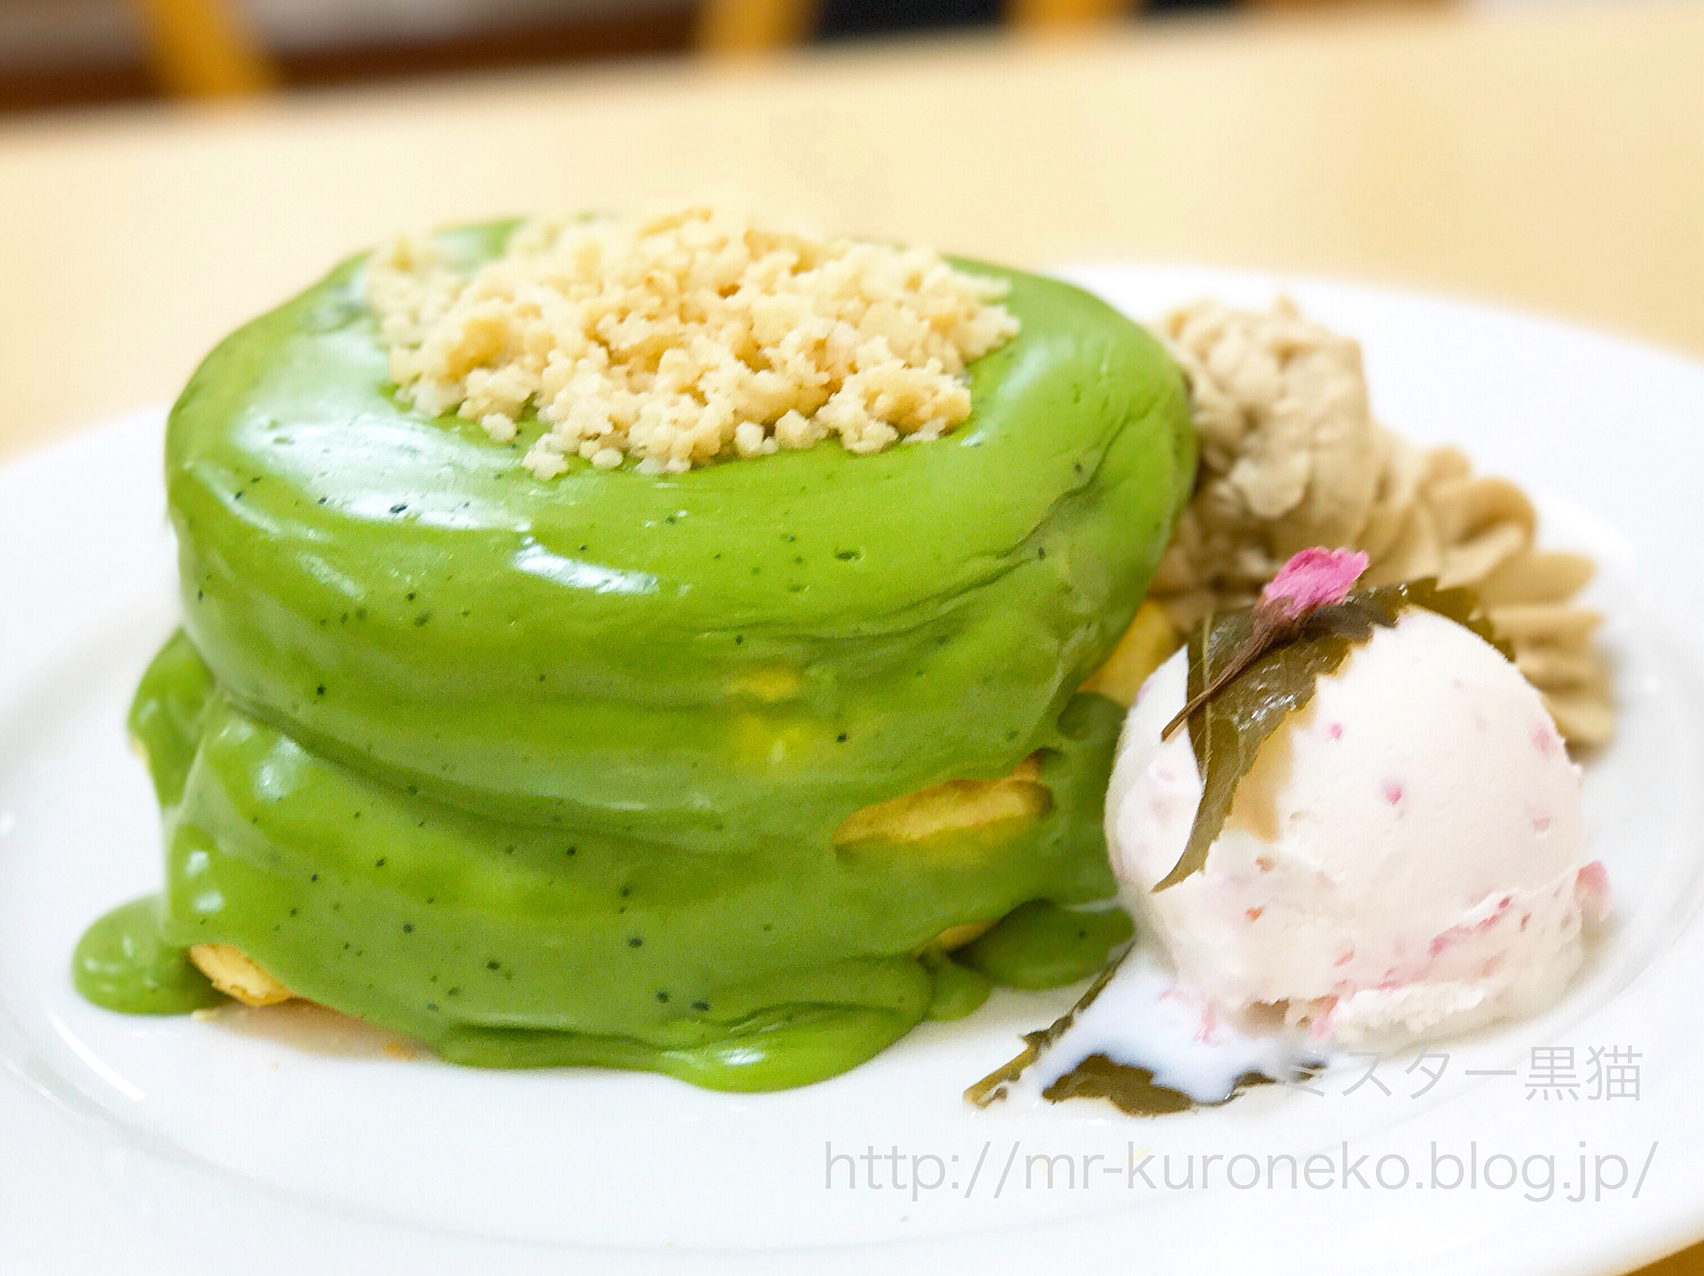 Rainbow Pancake レインボーパンケーキ 日本橋高島屋 催事限定 抹茶クリームと桜アイスの春のパンケーキ ミスター黒猫のカフェめぐり パンケーキを日本一実食